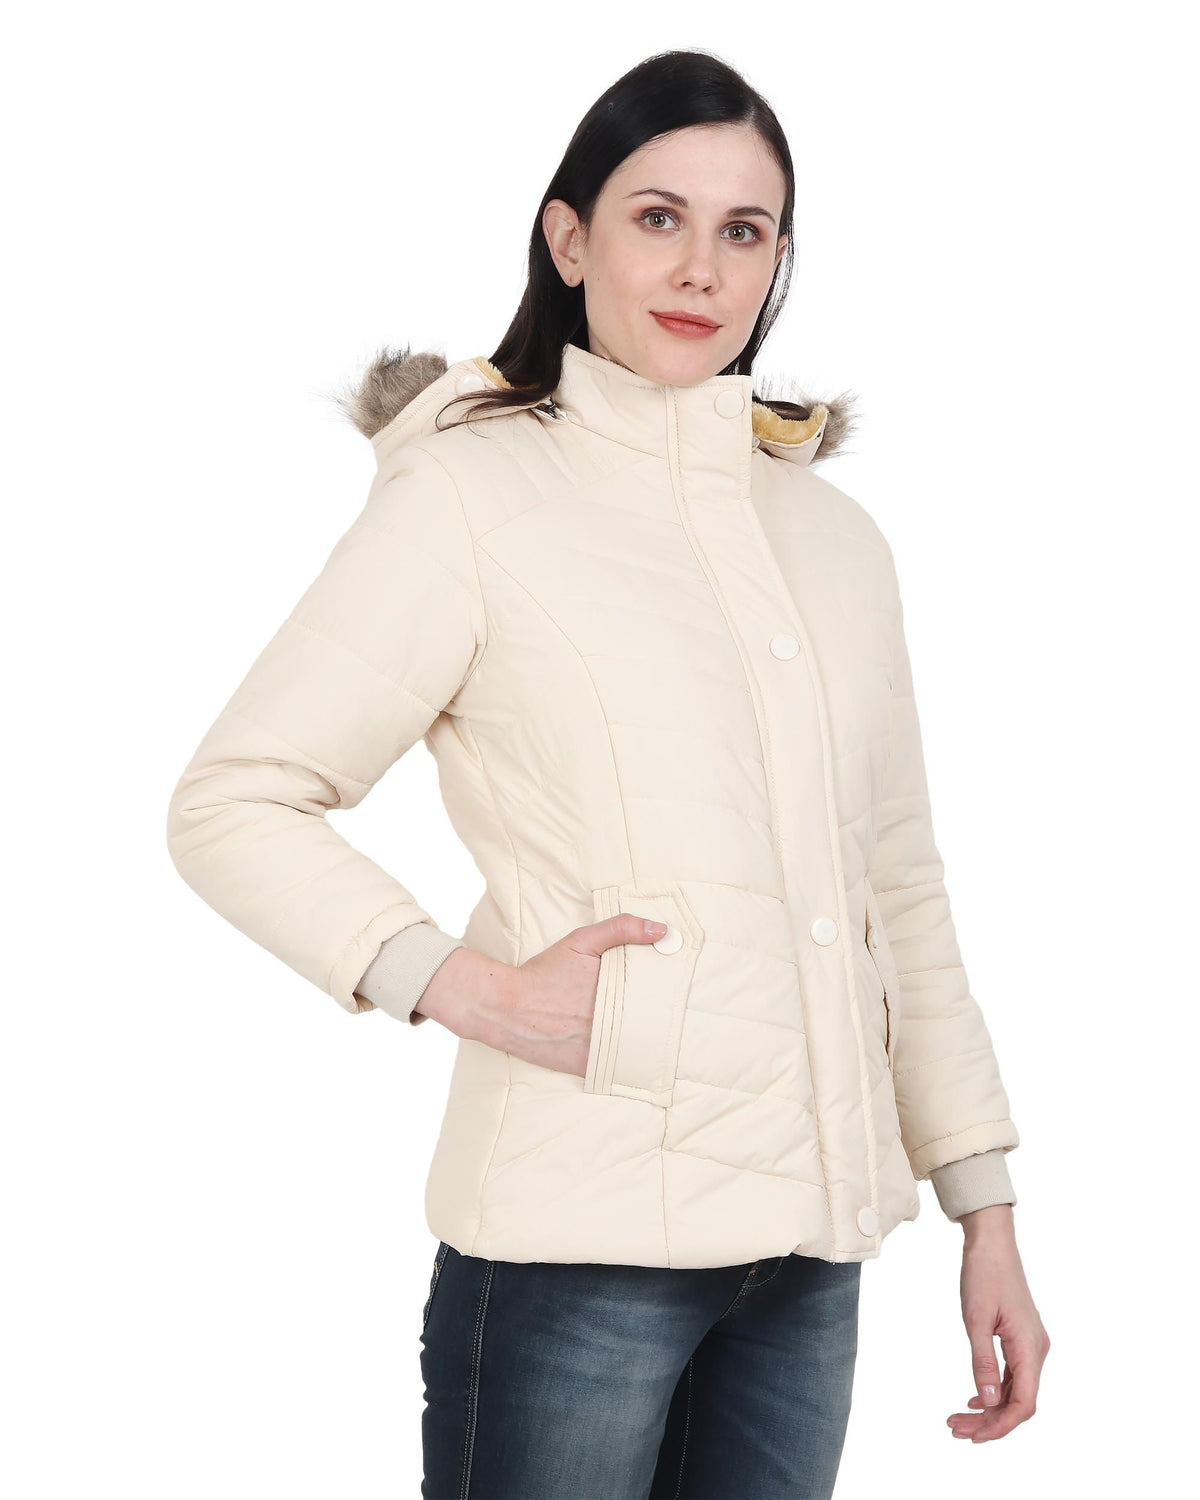 Xohy Women's Cream Winter Wear Full Sleeve Solid Puffer Jacket